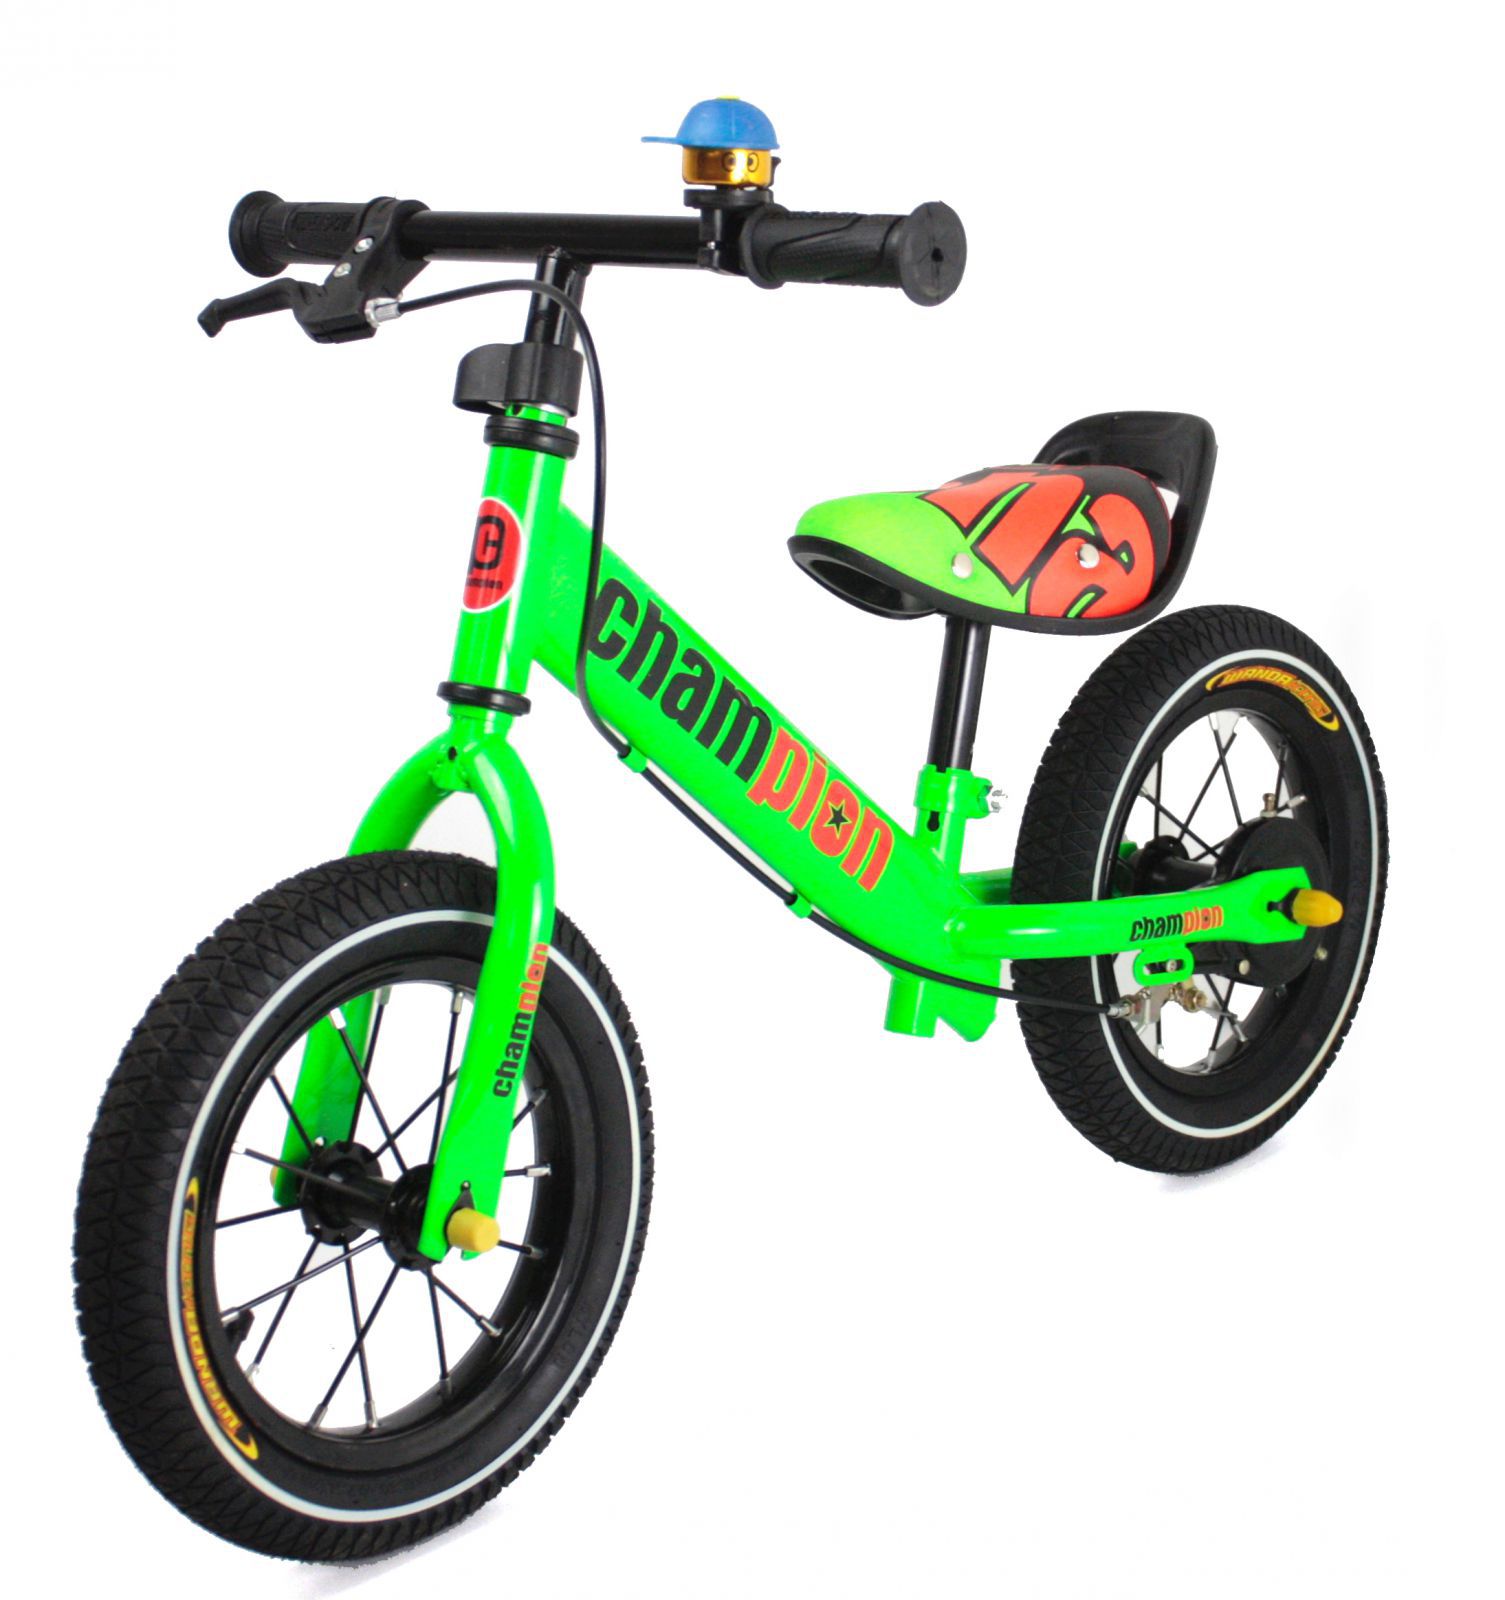 RCskladem Nejhezčí dětské sestavené kovové odrážedlo Champion s drátěnými koly scoot1Compgreen zelené